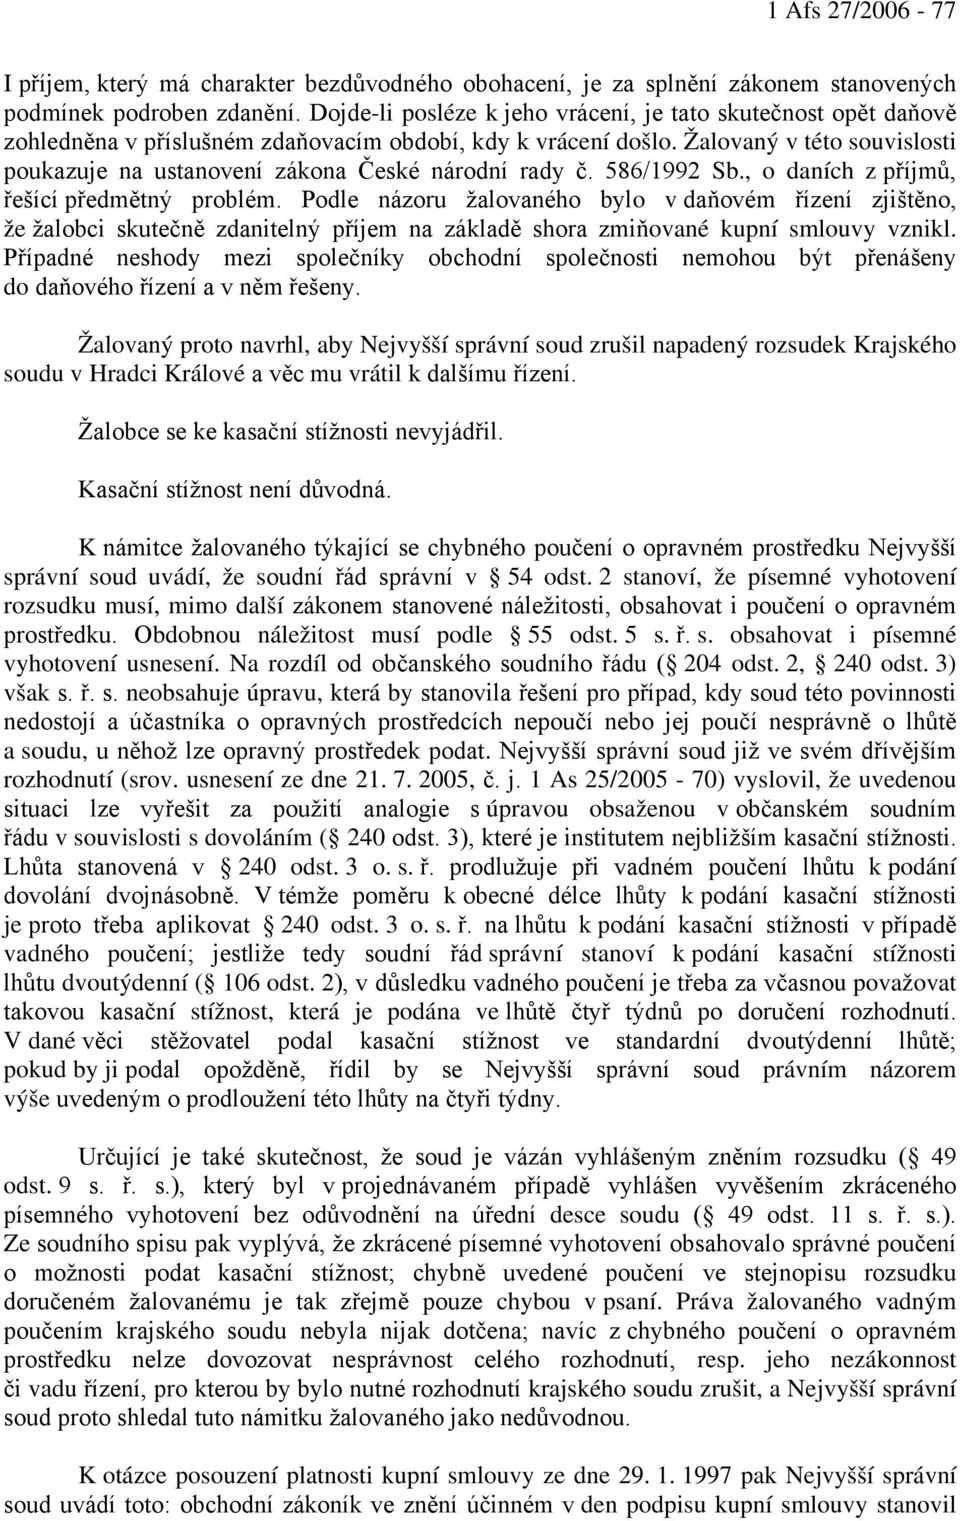 Žalovaný v této souvislosti poukazuje na ustanovení zákona České národní rady č. 586/1992 Sb., o daních z příjmů, řešící předmětný problém.